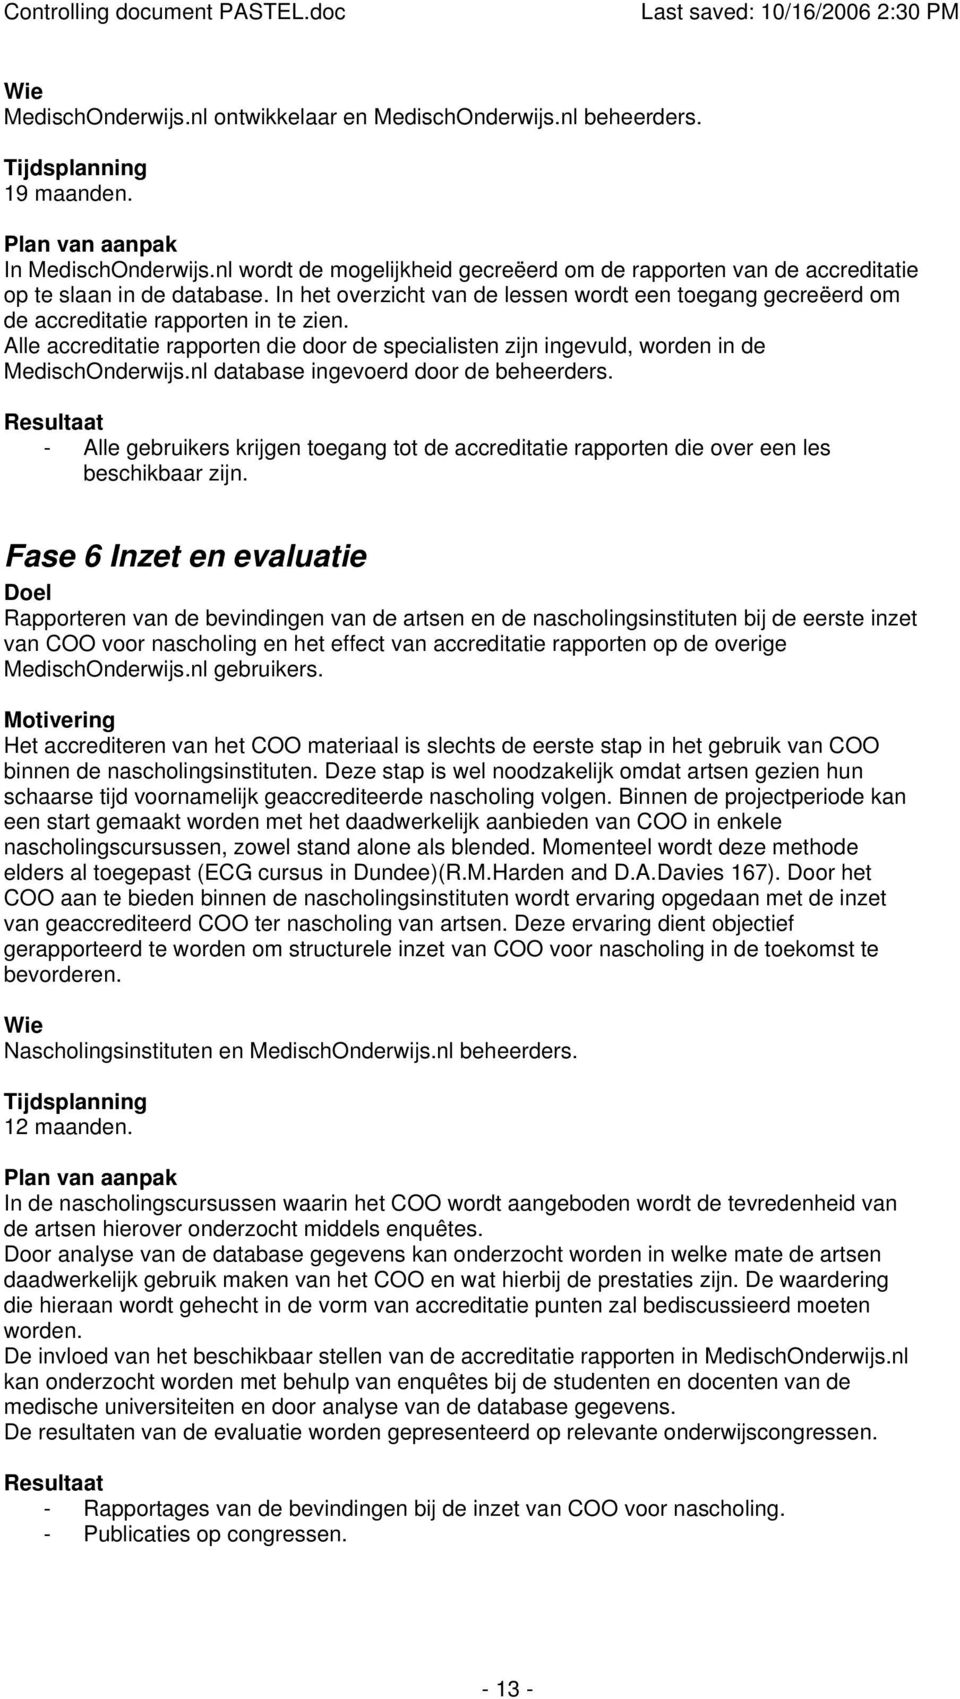 Alle accreditatie rapporten die door de specialisten zijn ingevuld, worden in de MedischOnderwijs.nl database ingevoerd door de beheerders.